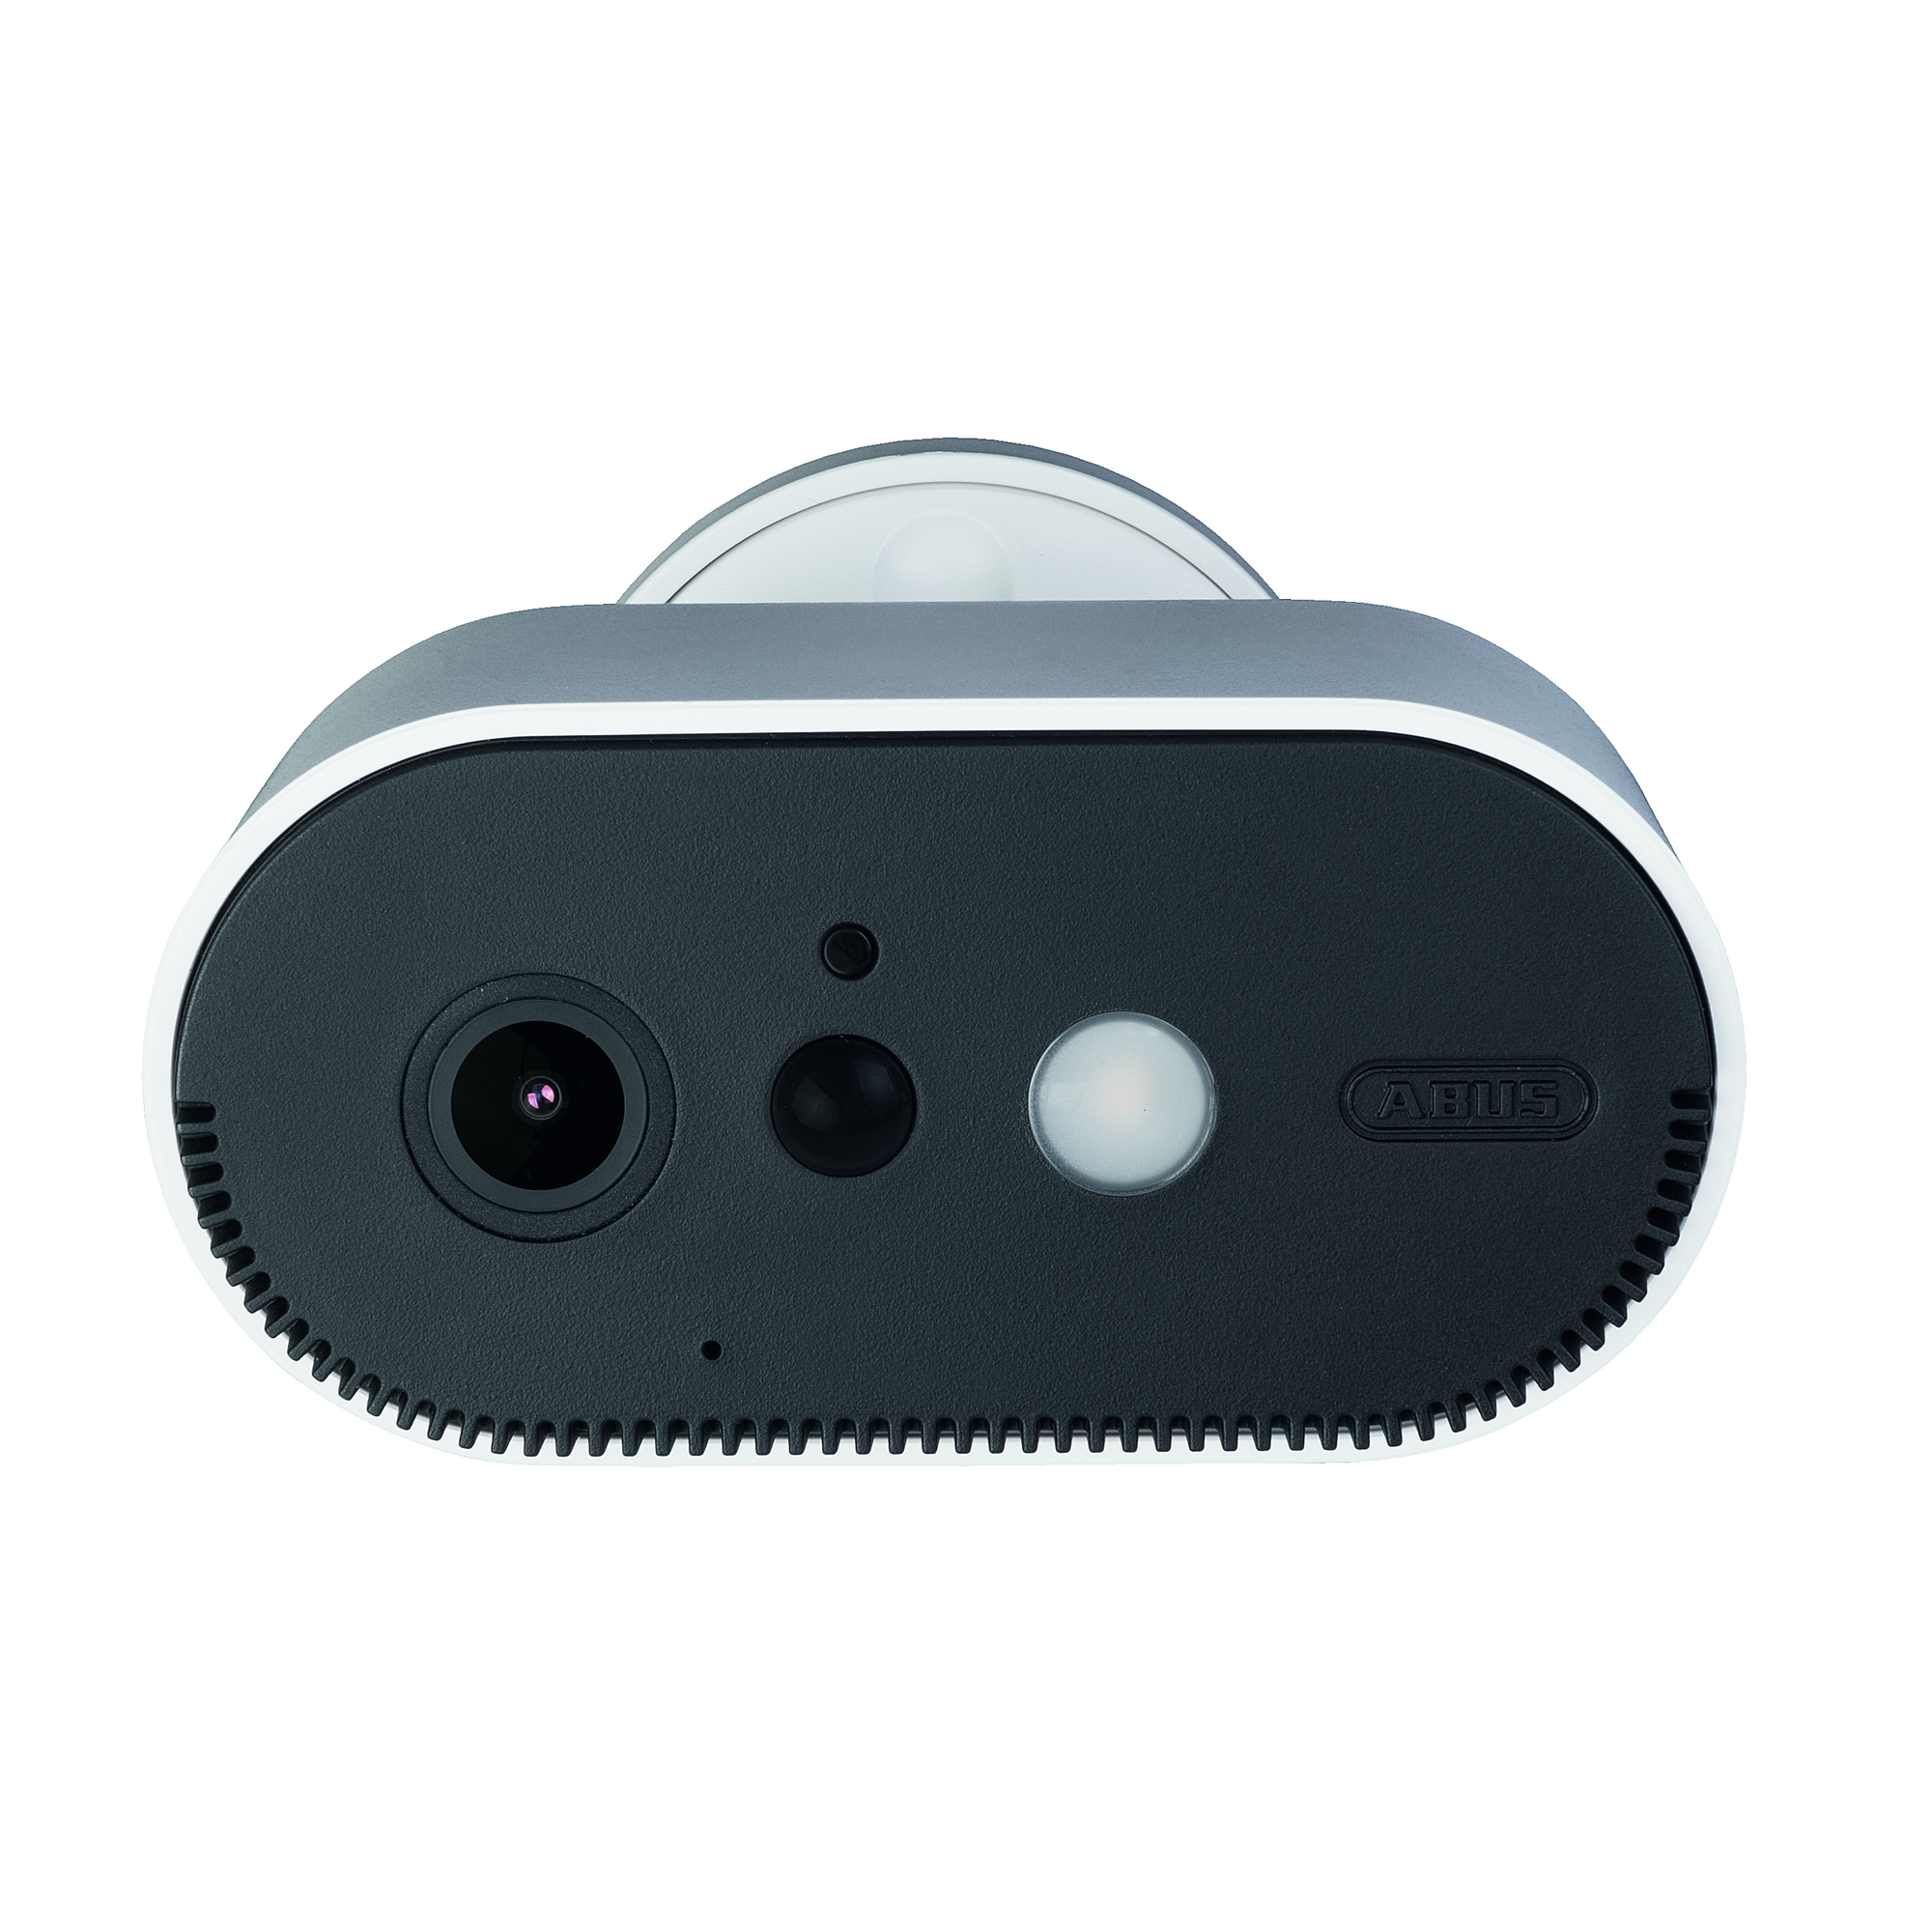 Zusatz Akku-Überwachungskamera 'PPIC90520' + product picture